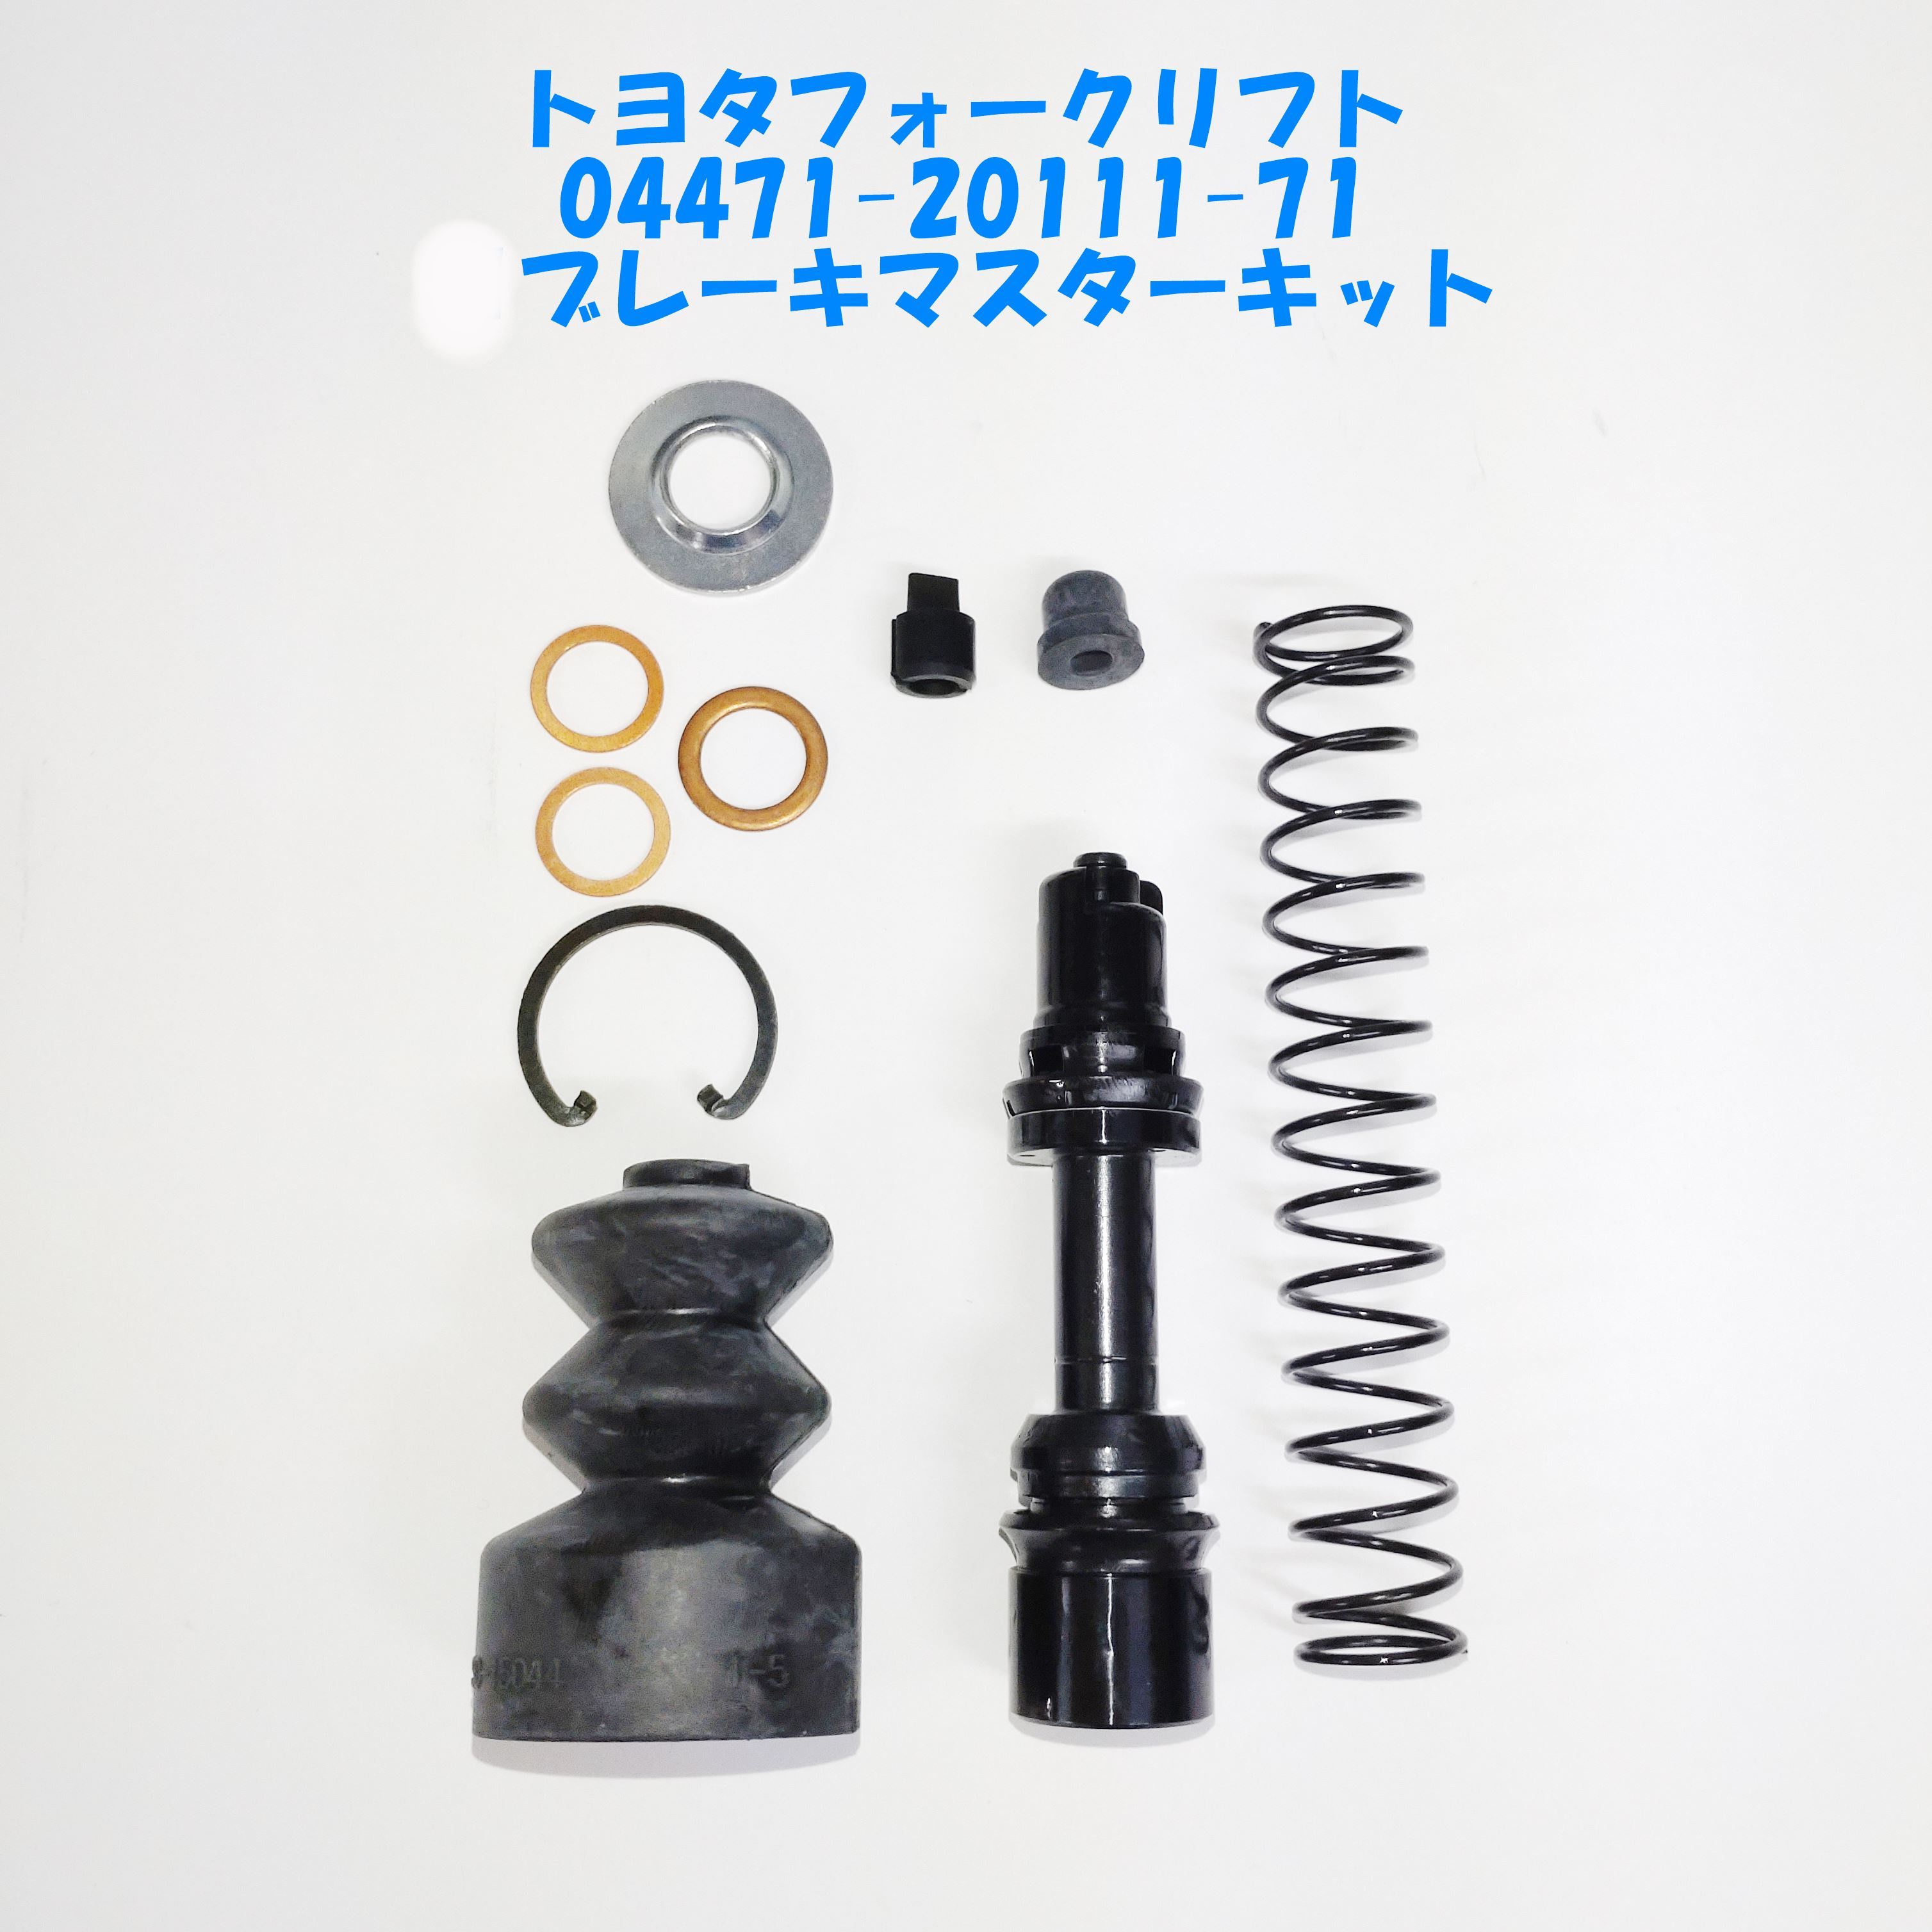 04471-20111-71/ Toyota вильчатый подъемник / главный тормозной цилиндр комплект / новый товар / неоригинальный товар 